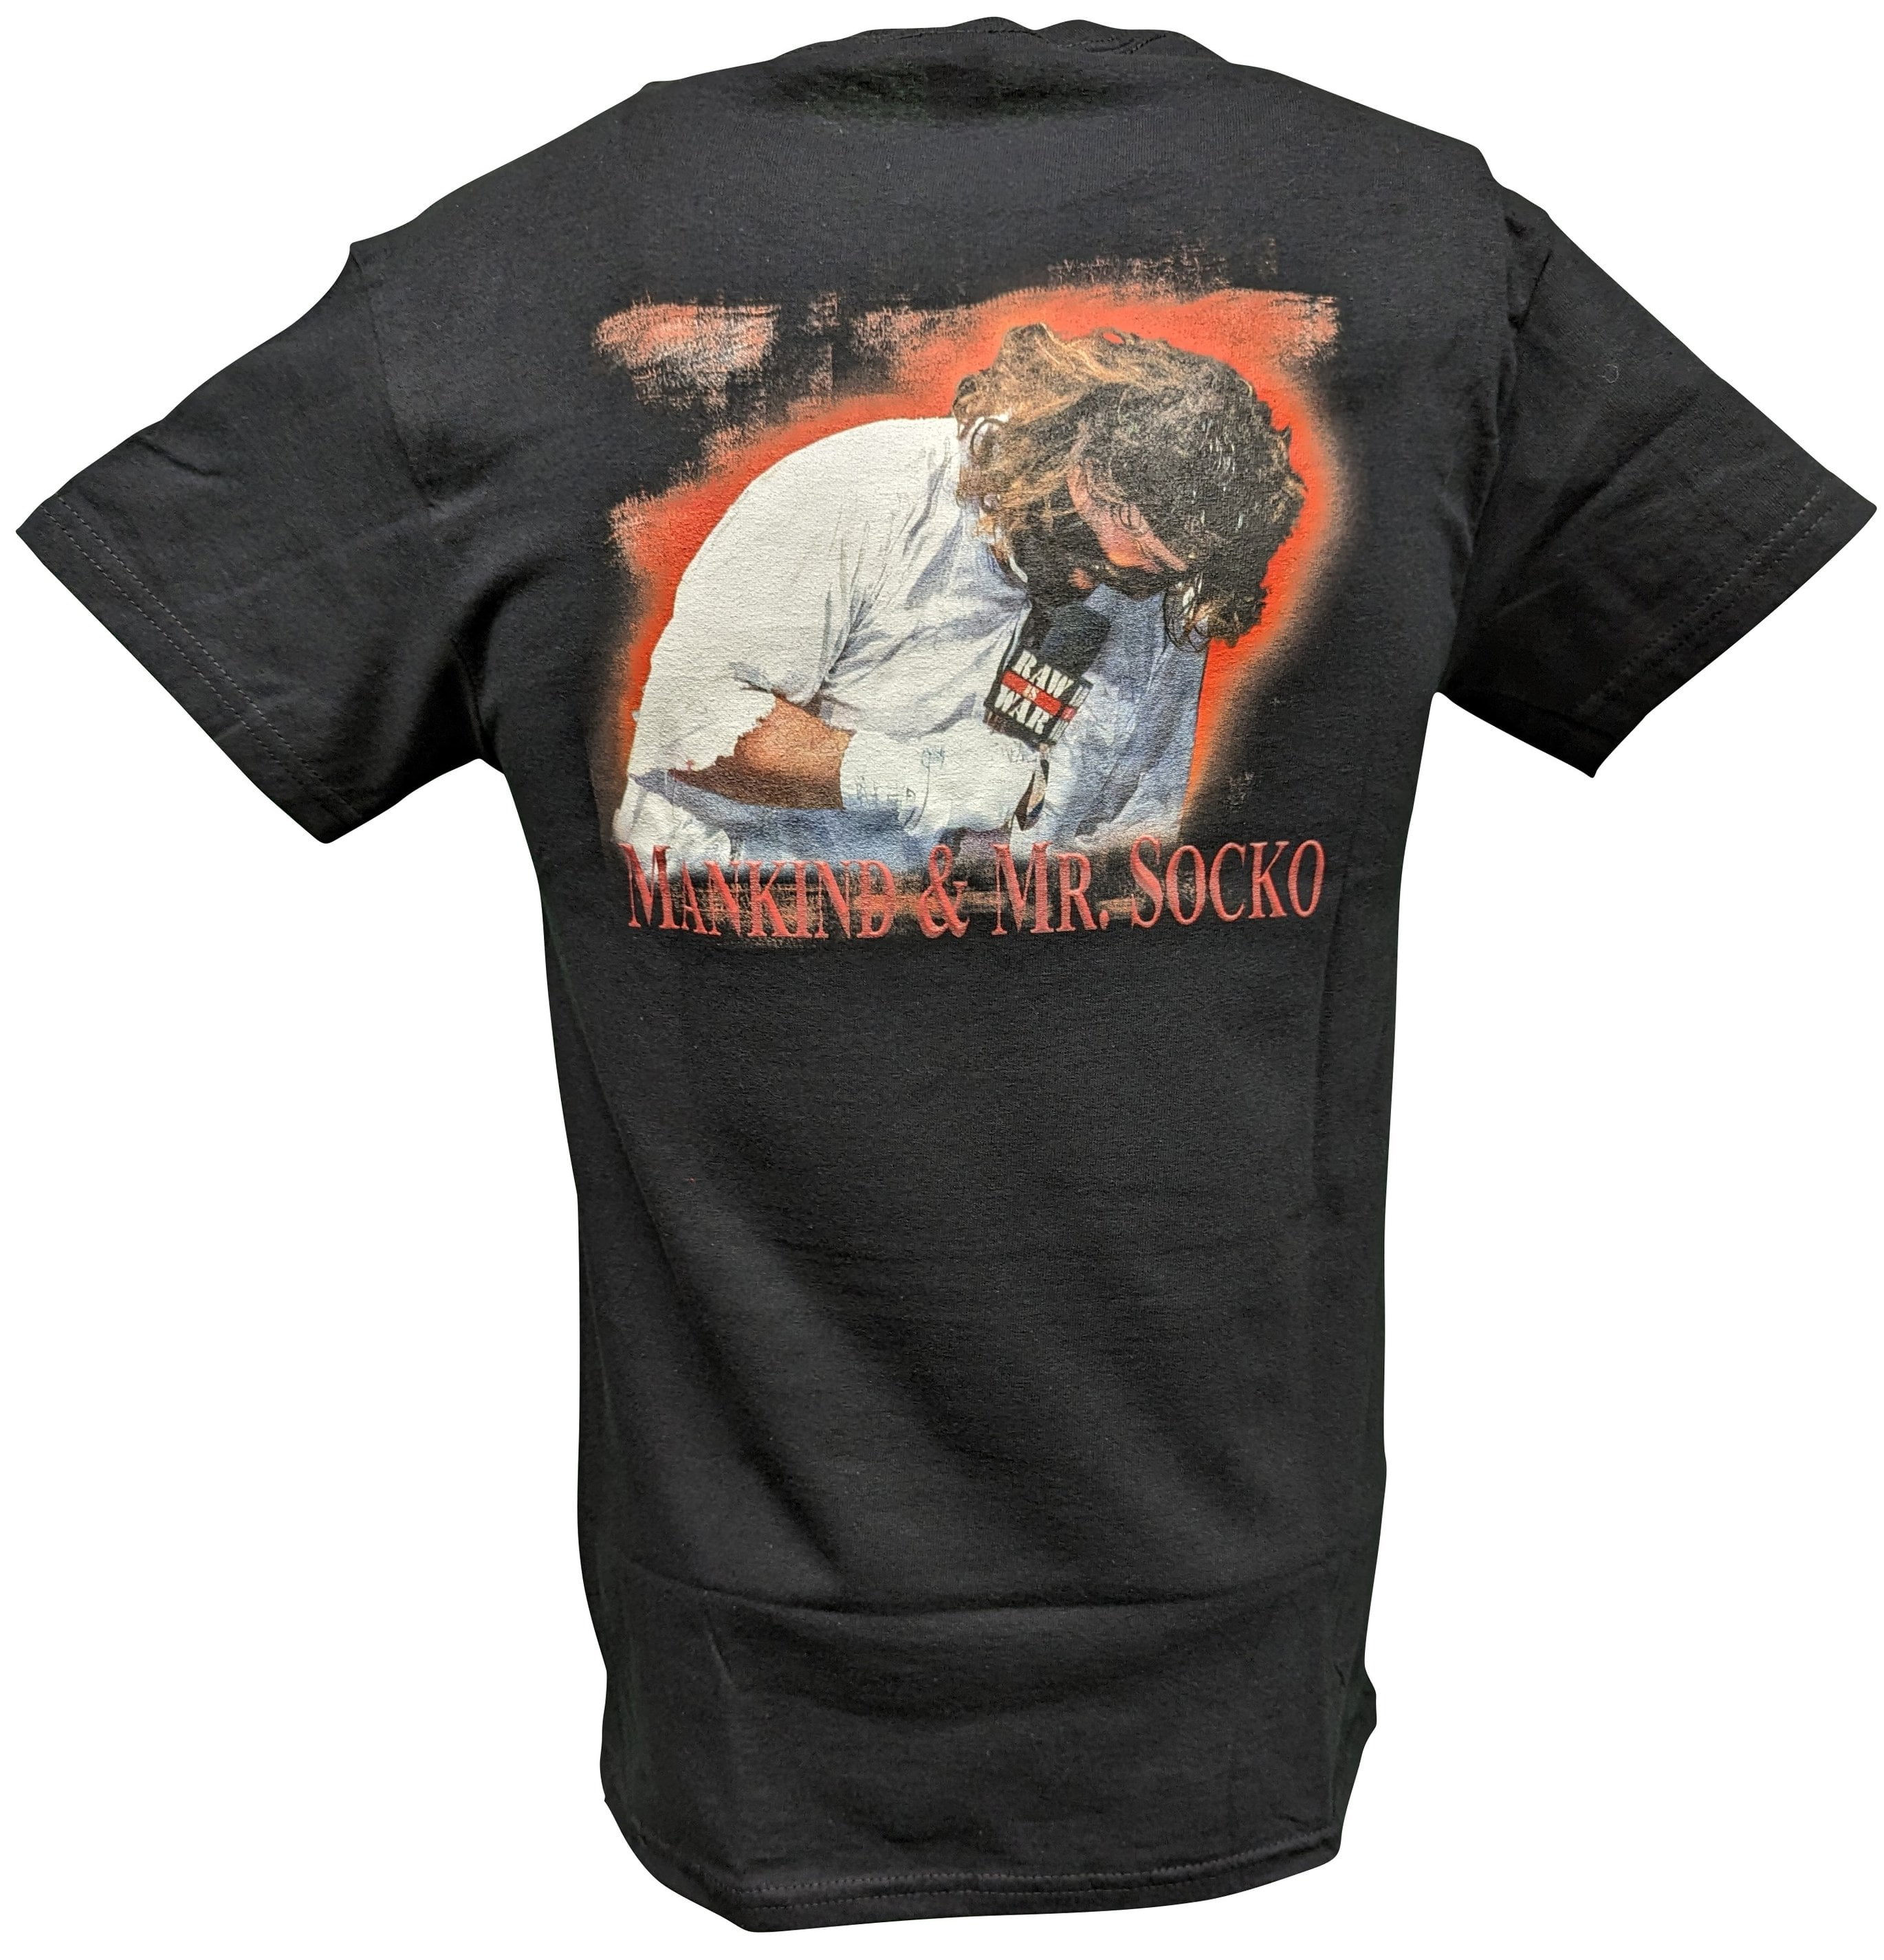 Børnepalads Pompeji psykologi Mankind Mick Foley Mr Socko Don't Feed Animals Mens T-shirt - Walmart.com